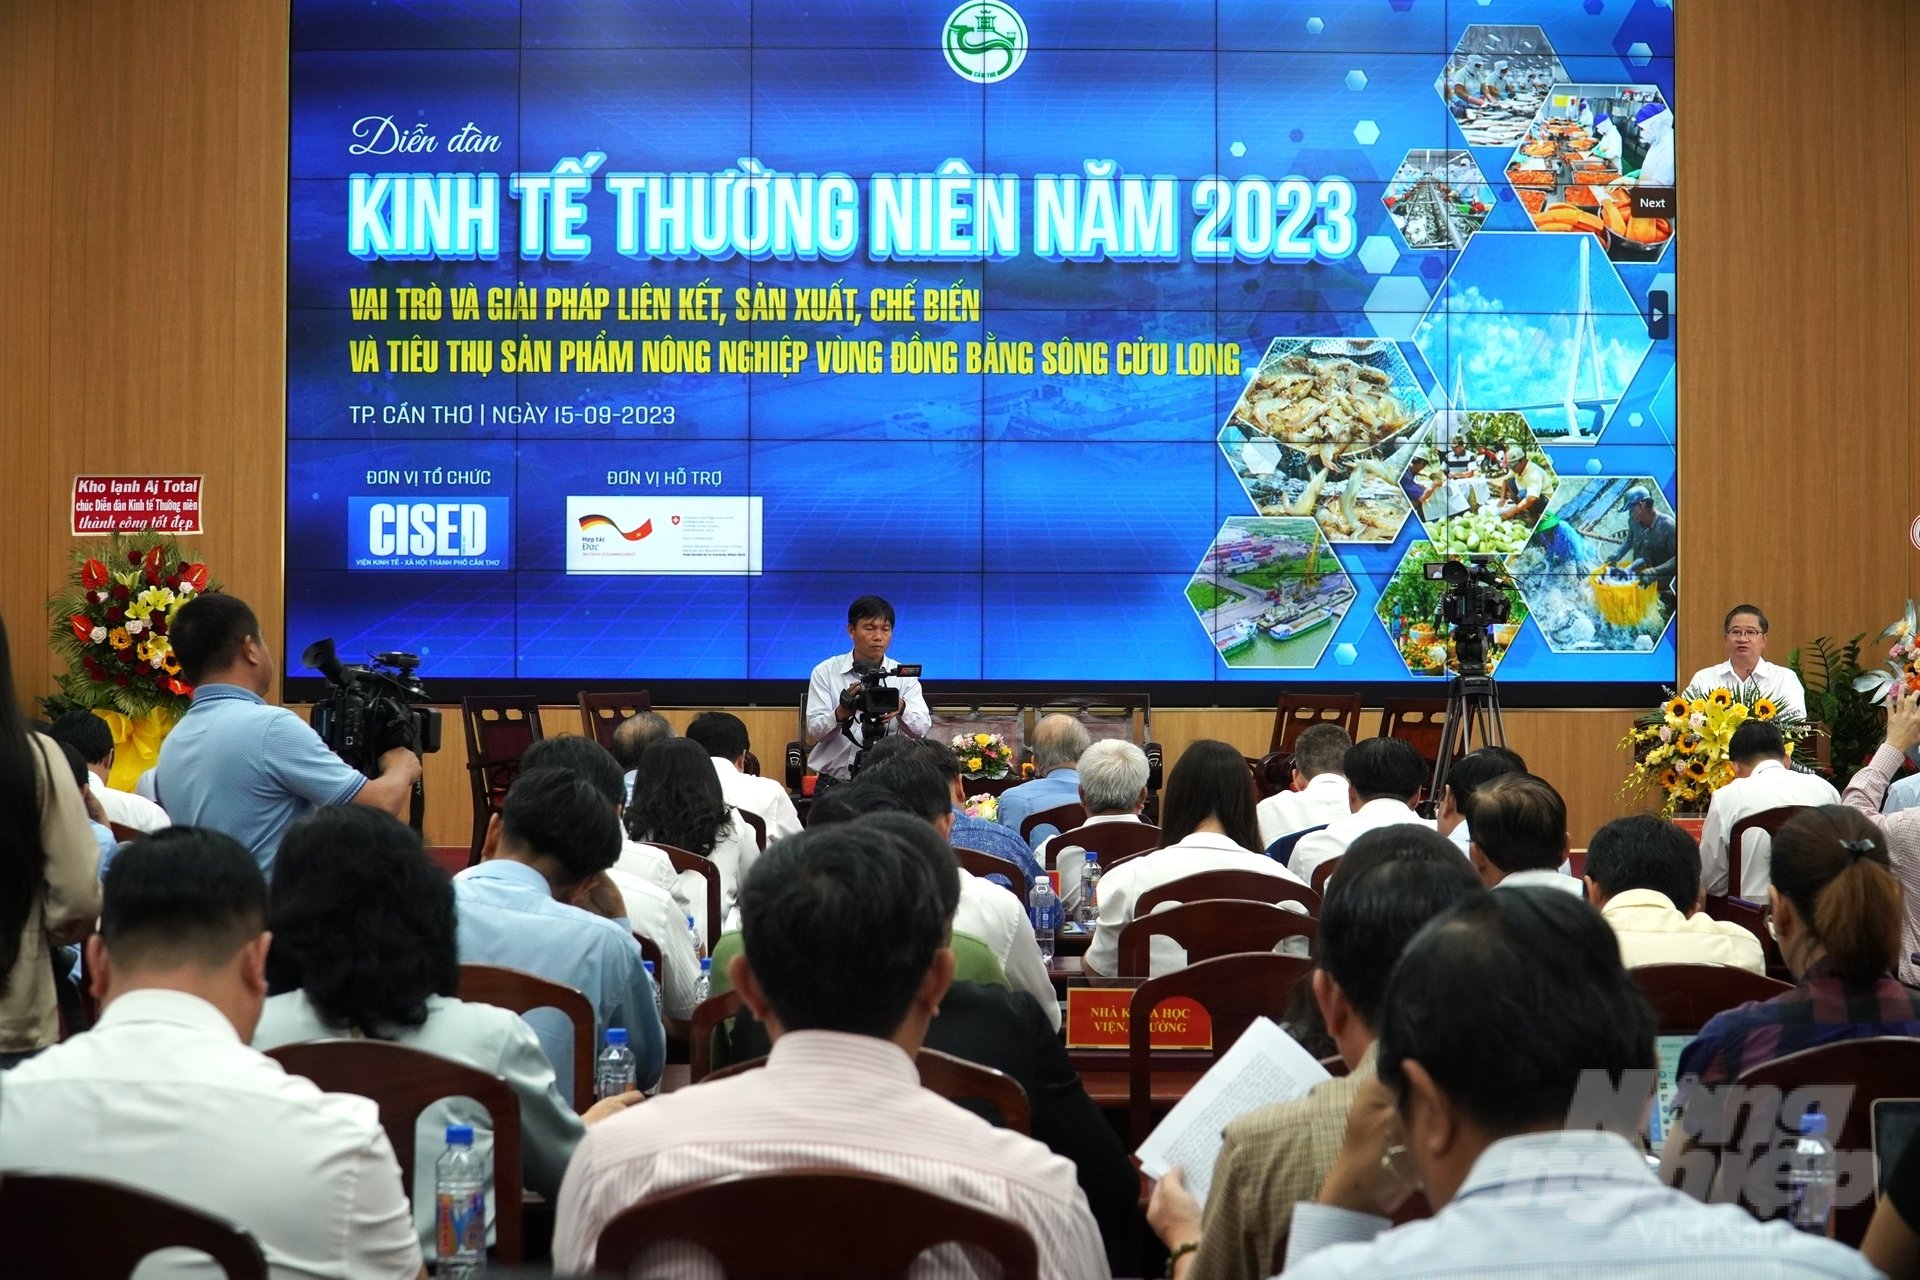 Diễn đàn kinh tế thường niên năm 2023 với chủ đề 'Vai trò và giải pháp liên kết, sản xuất, chế biến và tiêu thụ sản phẩm nông nghiệp vùng ĐBSCL' do UBND TP Cần Thơ tổ chức. Ảnh: Kim Anh.